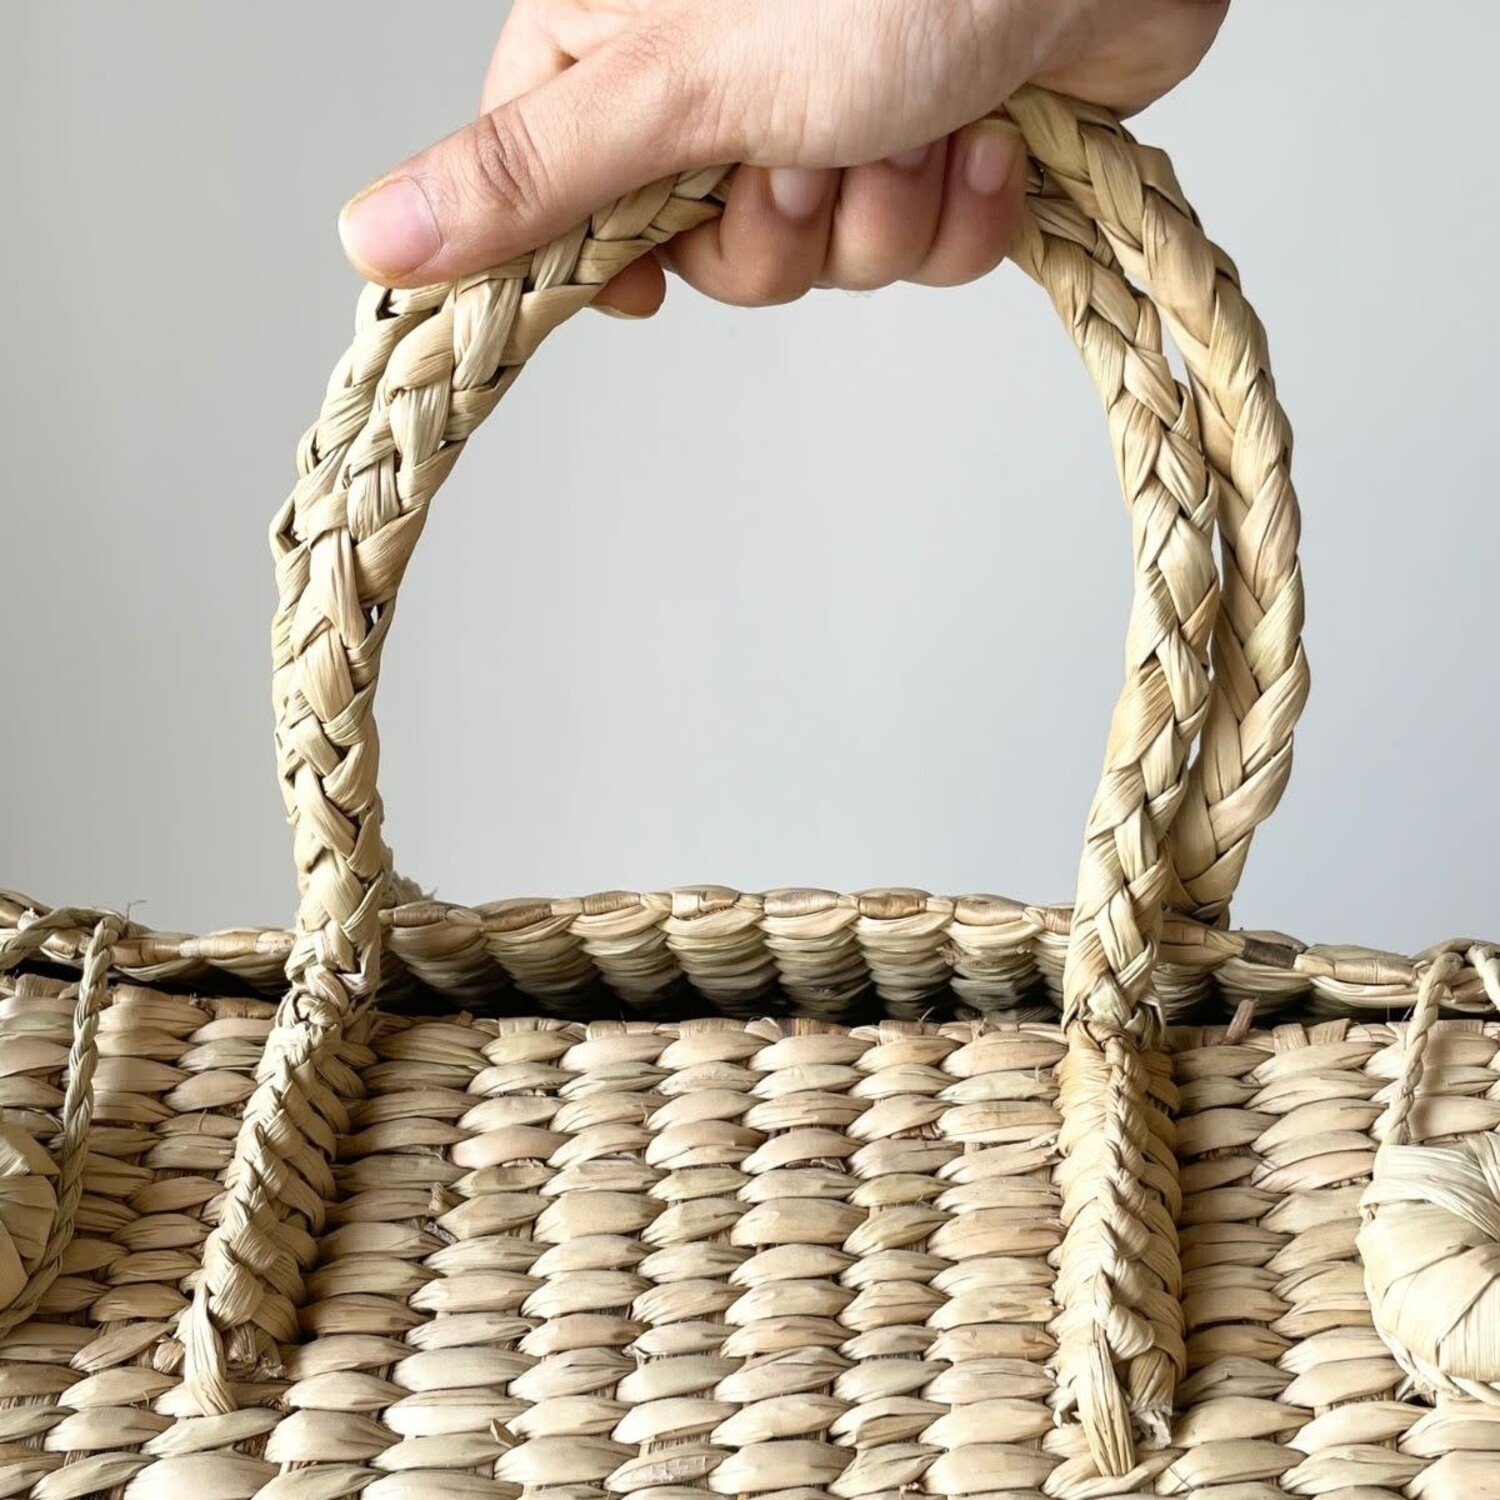 Vintage picnic basket purse Made in Hong... - Depop